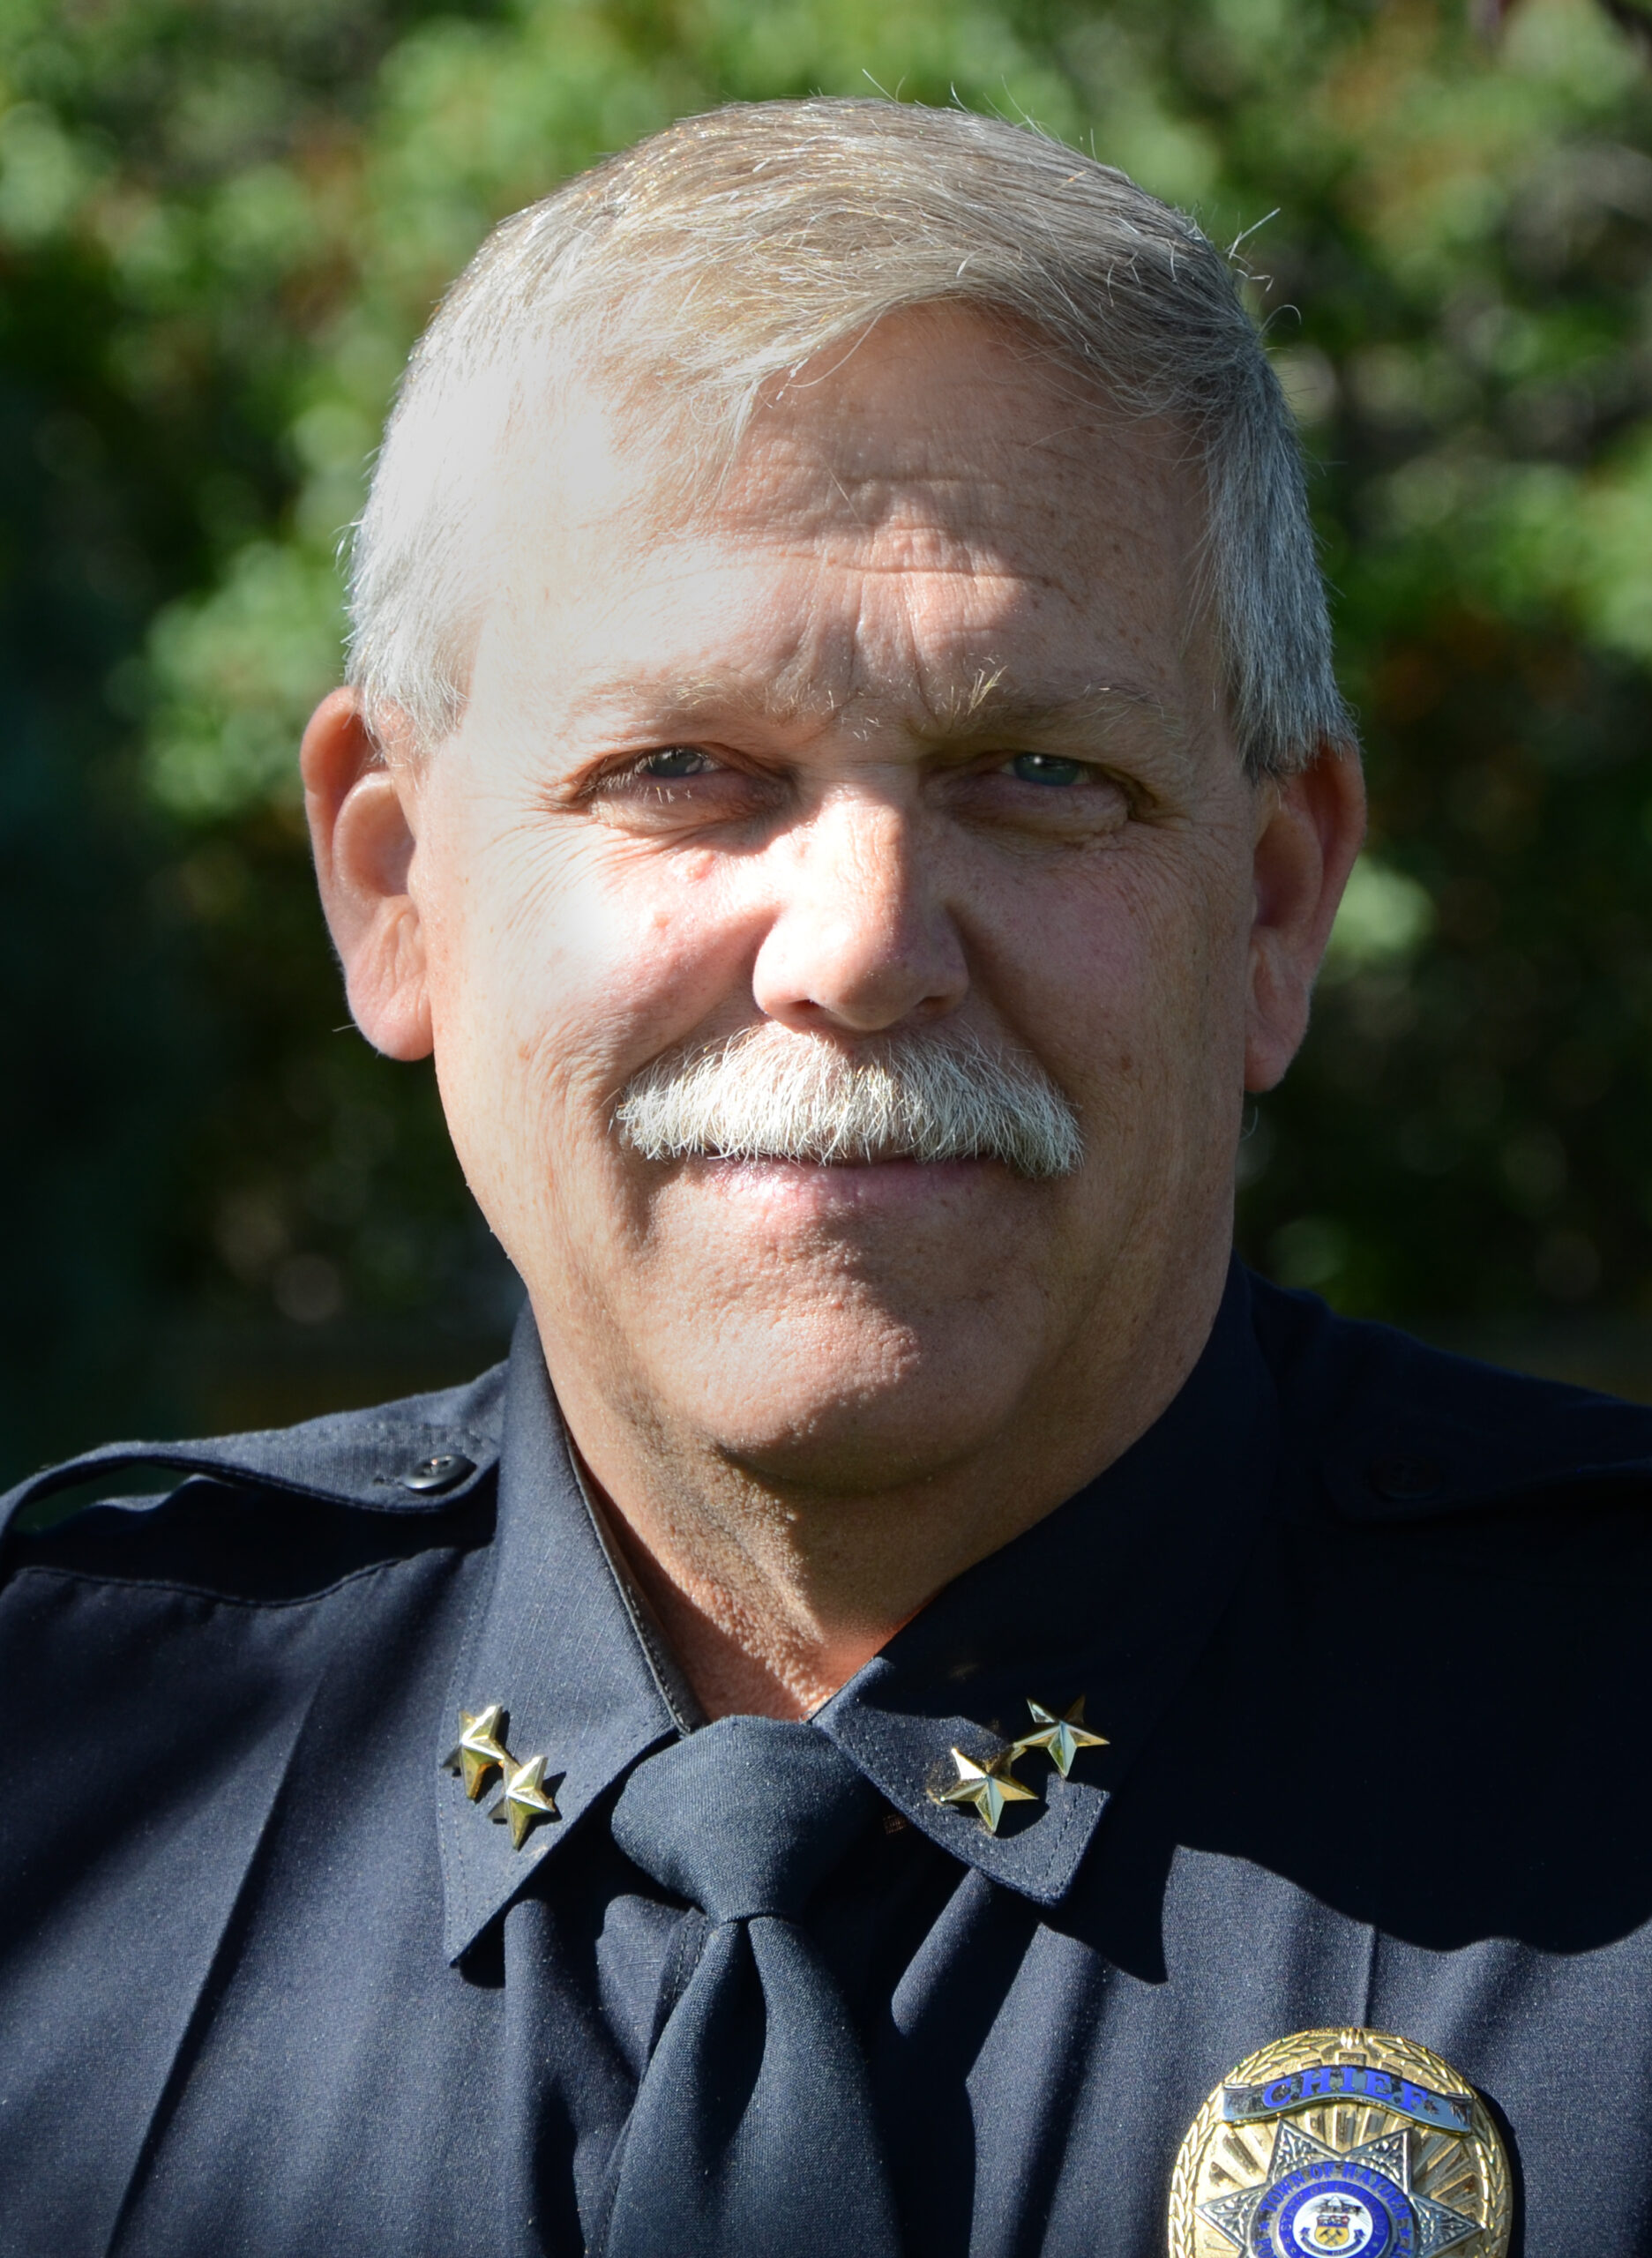 Greg Tuliszewski Police Chief